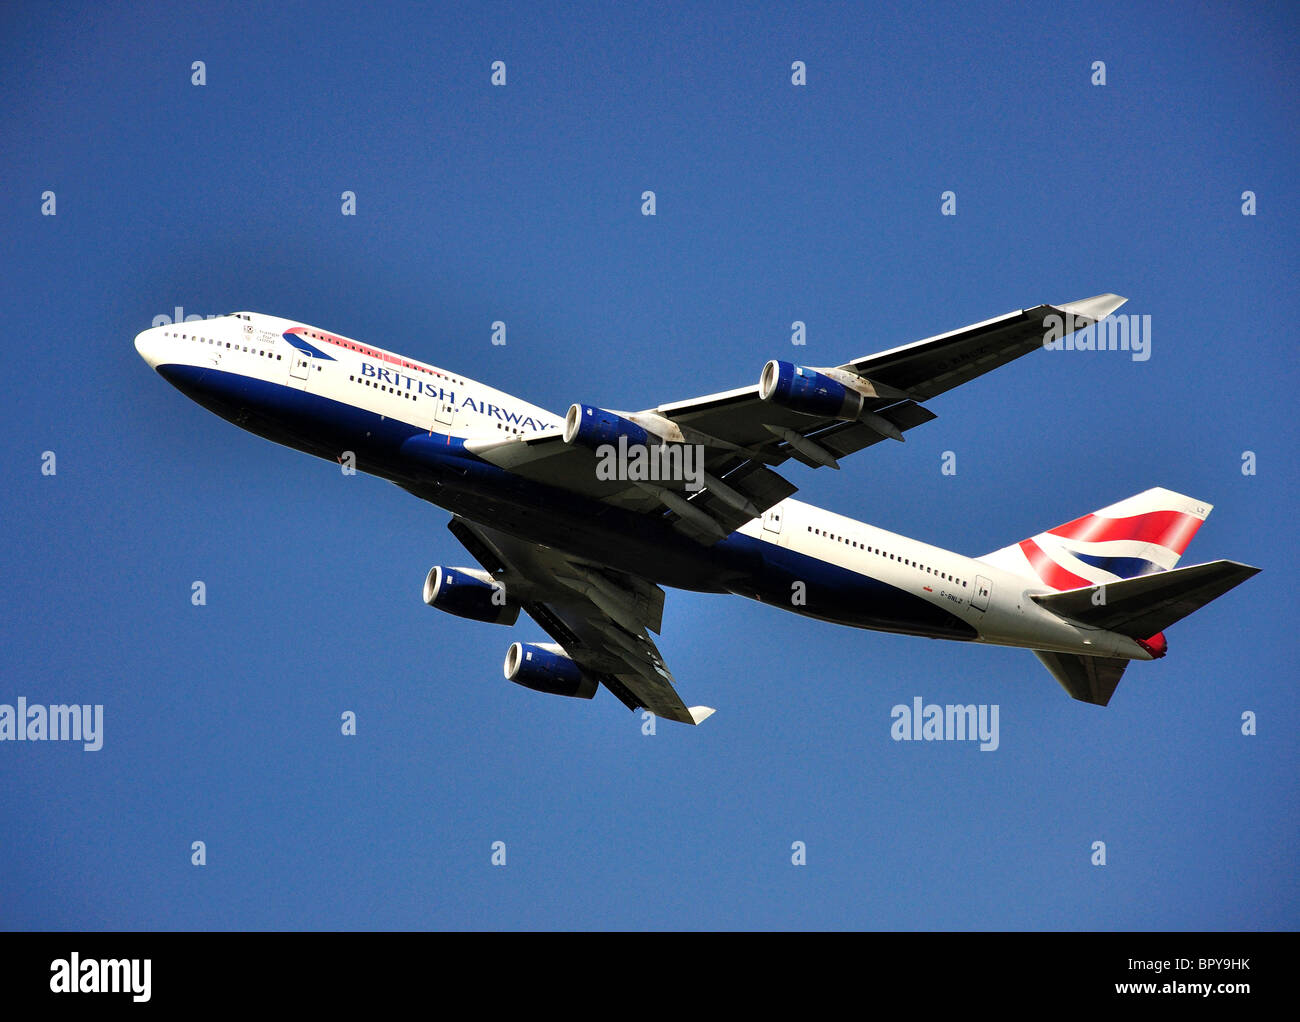 British Airways Boeing 747-400 décollant de l'aéroport de Heathrow, Londres, Angleterre, Royaume-Uni Banque D'Images